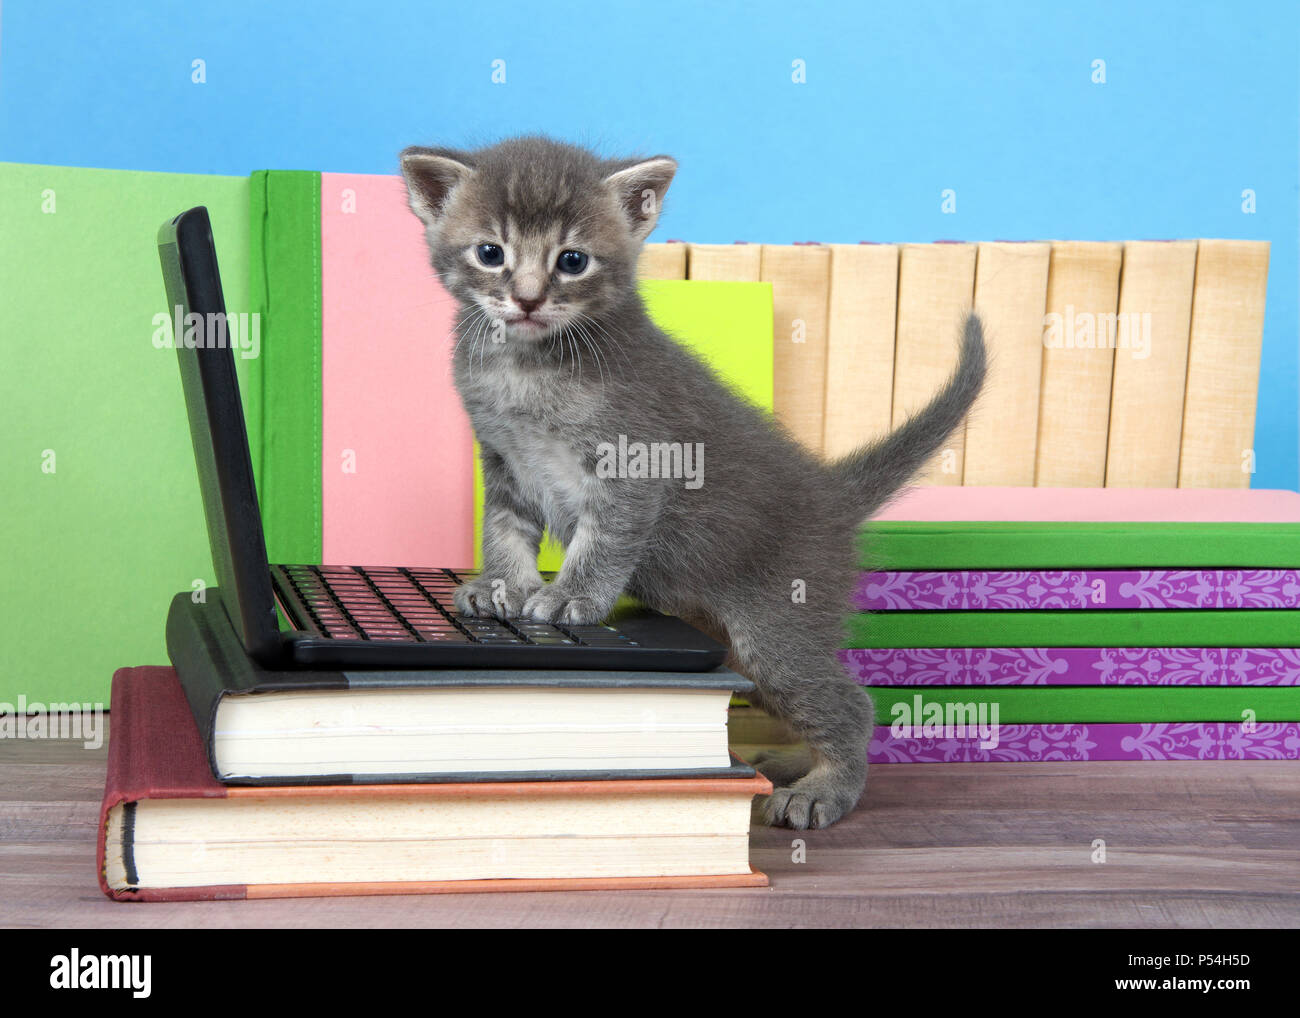 Un petit chaton gris et crème tabby debout avec pattes avant sur un ordinateur portable miniature à la recherche au spectateur. Livres empilés autour, plancher de bois, bleu Banque D'Images